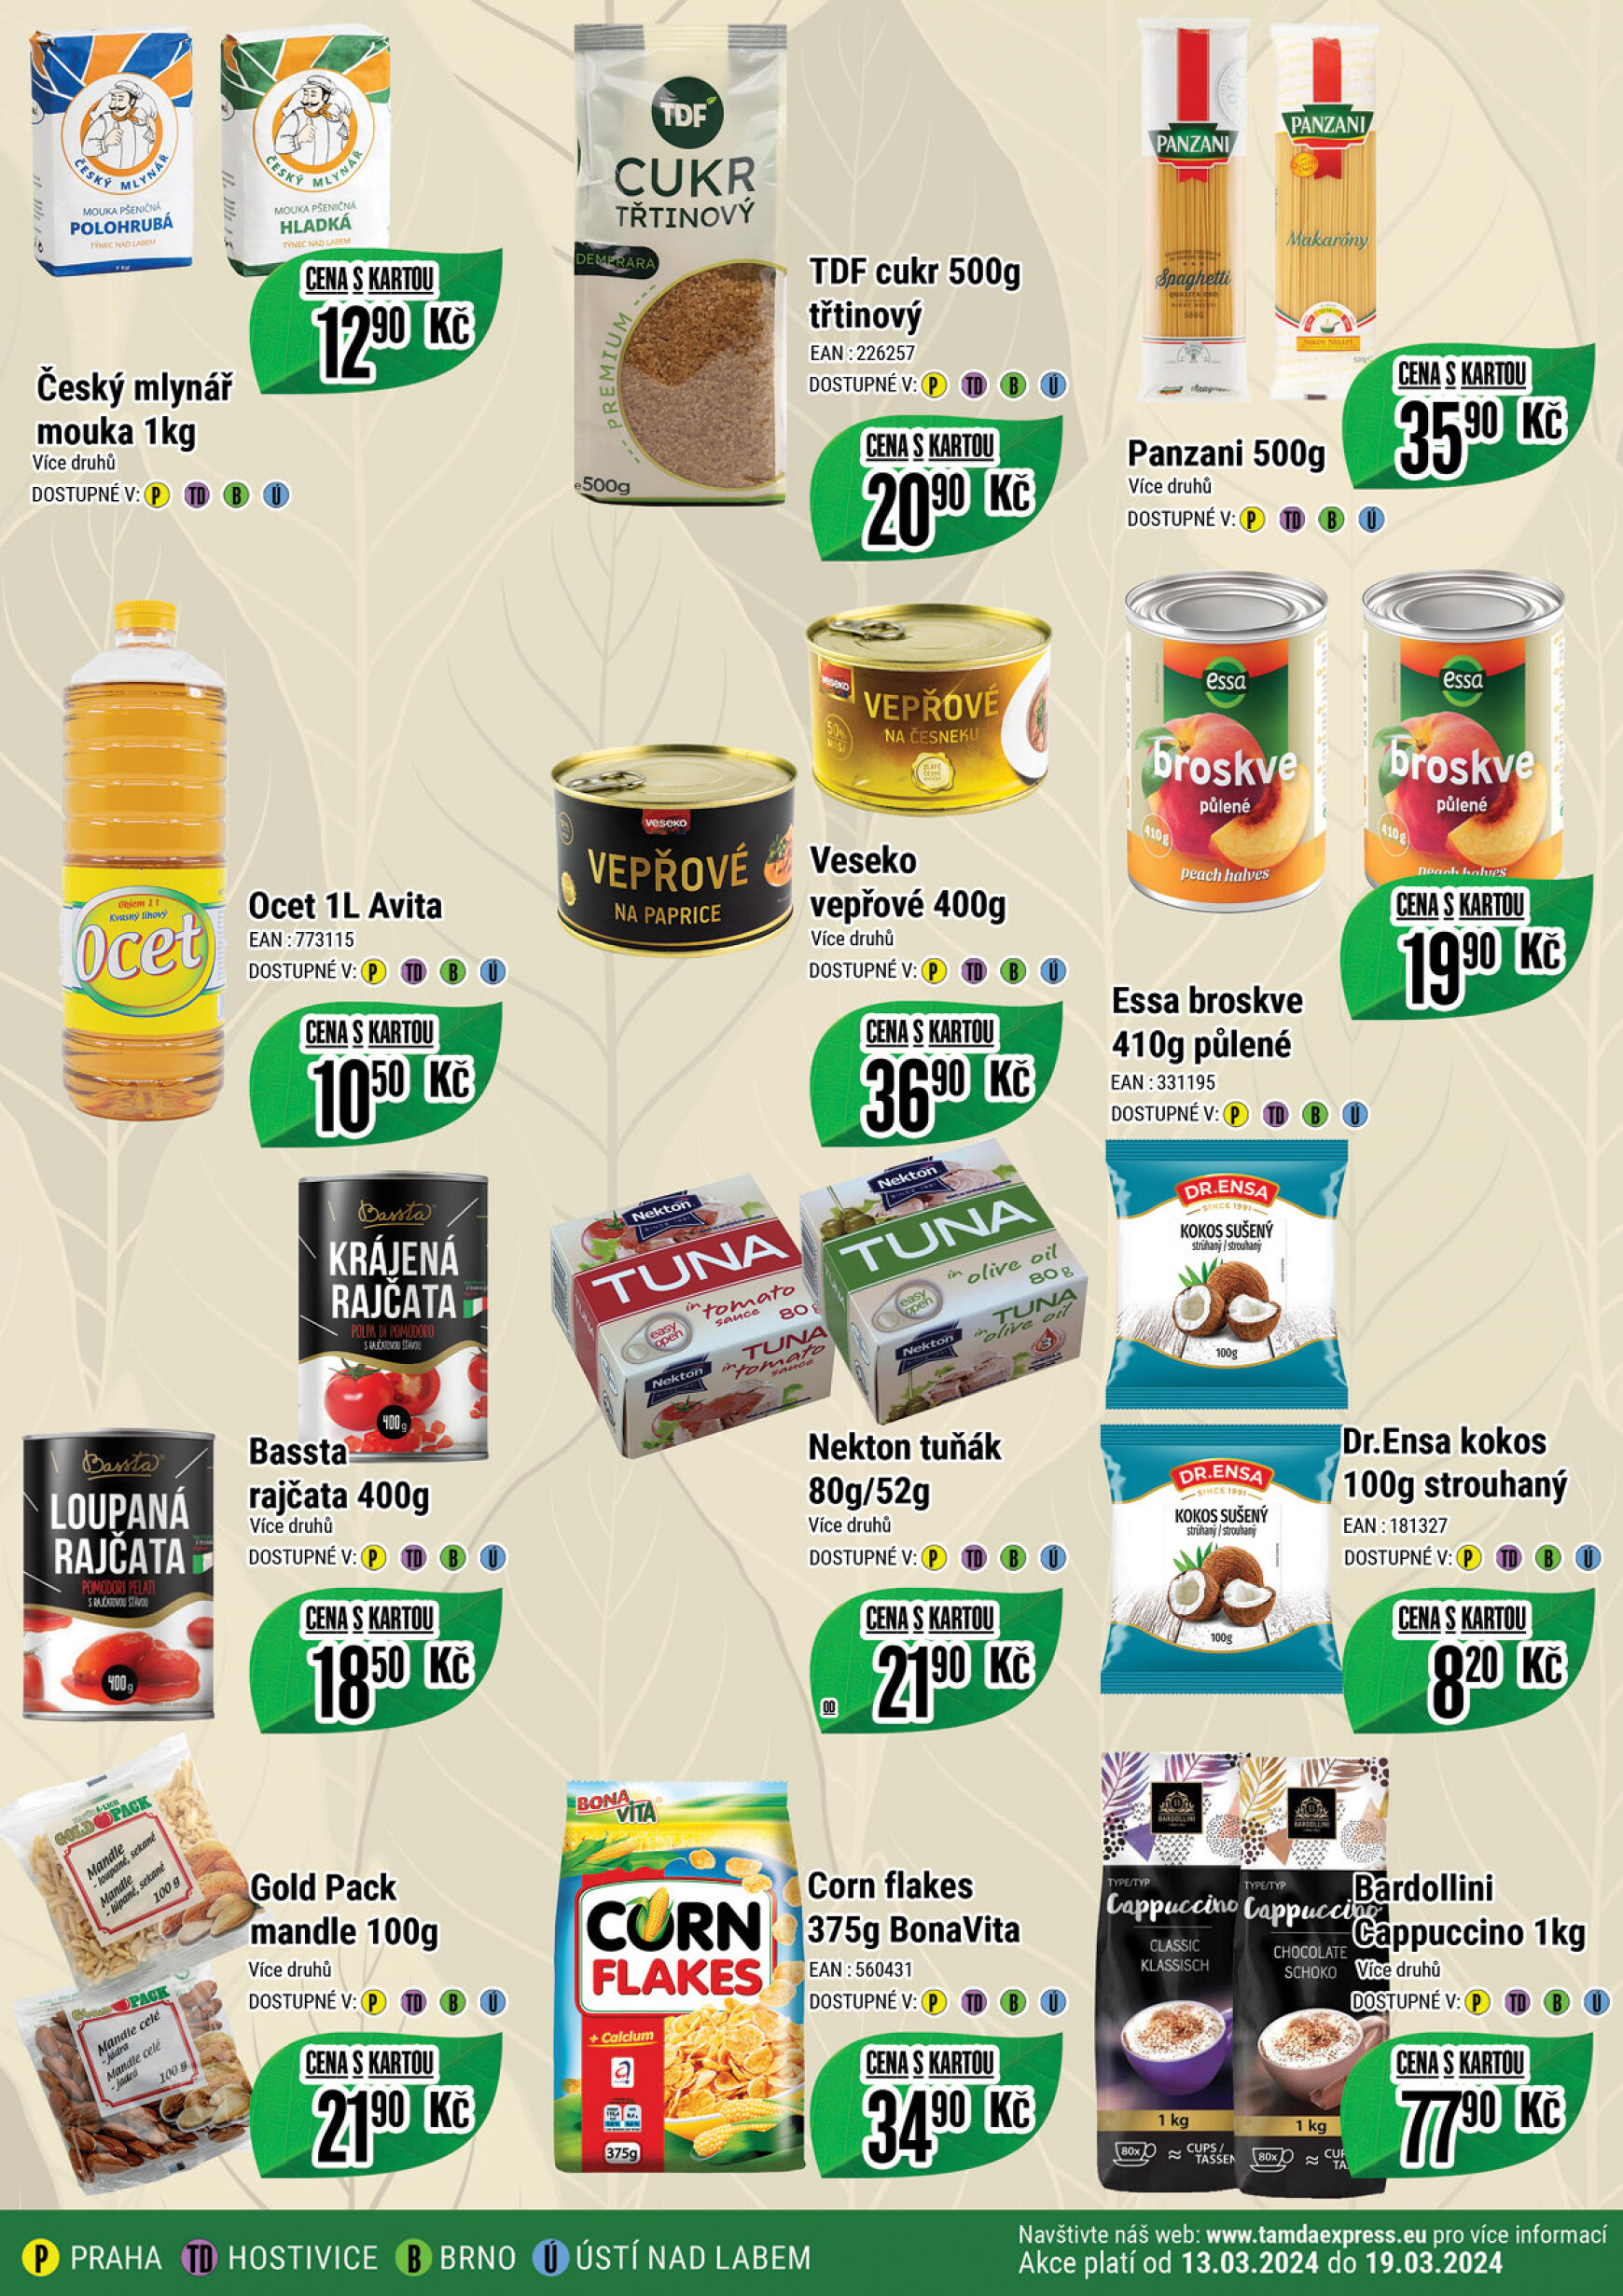 tamda-foods - Tamda Foods platný od 13.03.2024 - page: 3